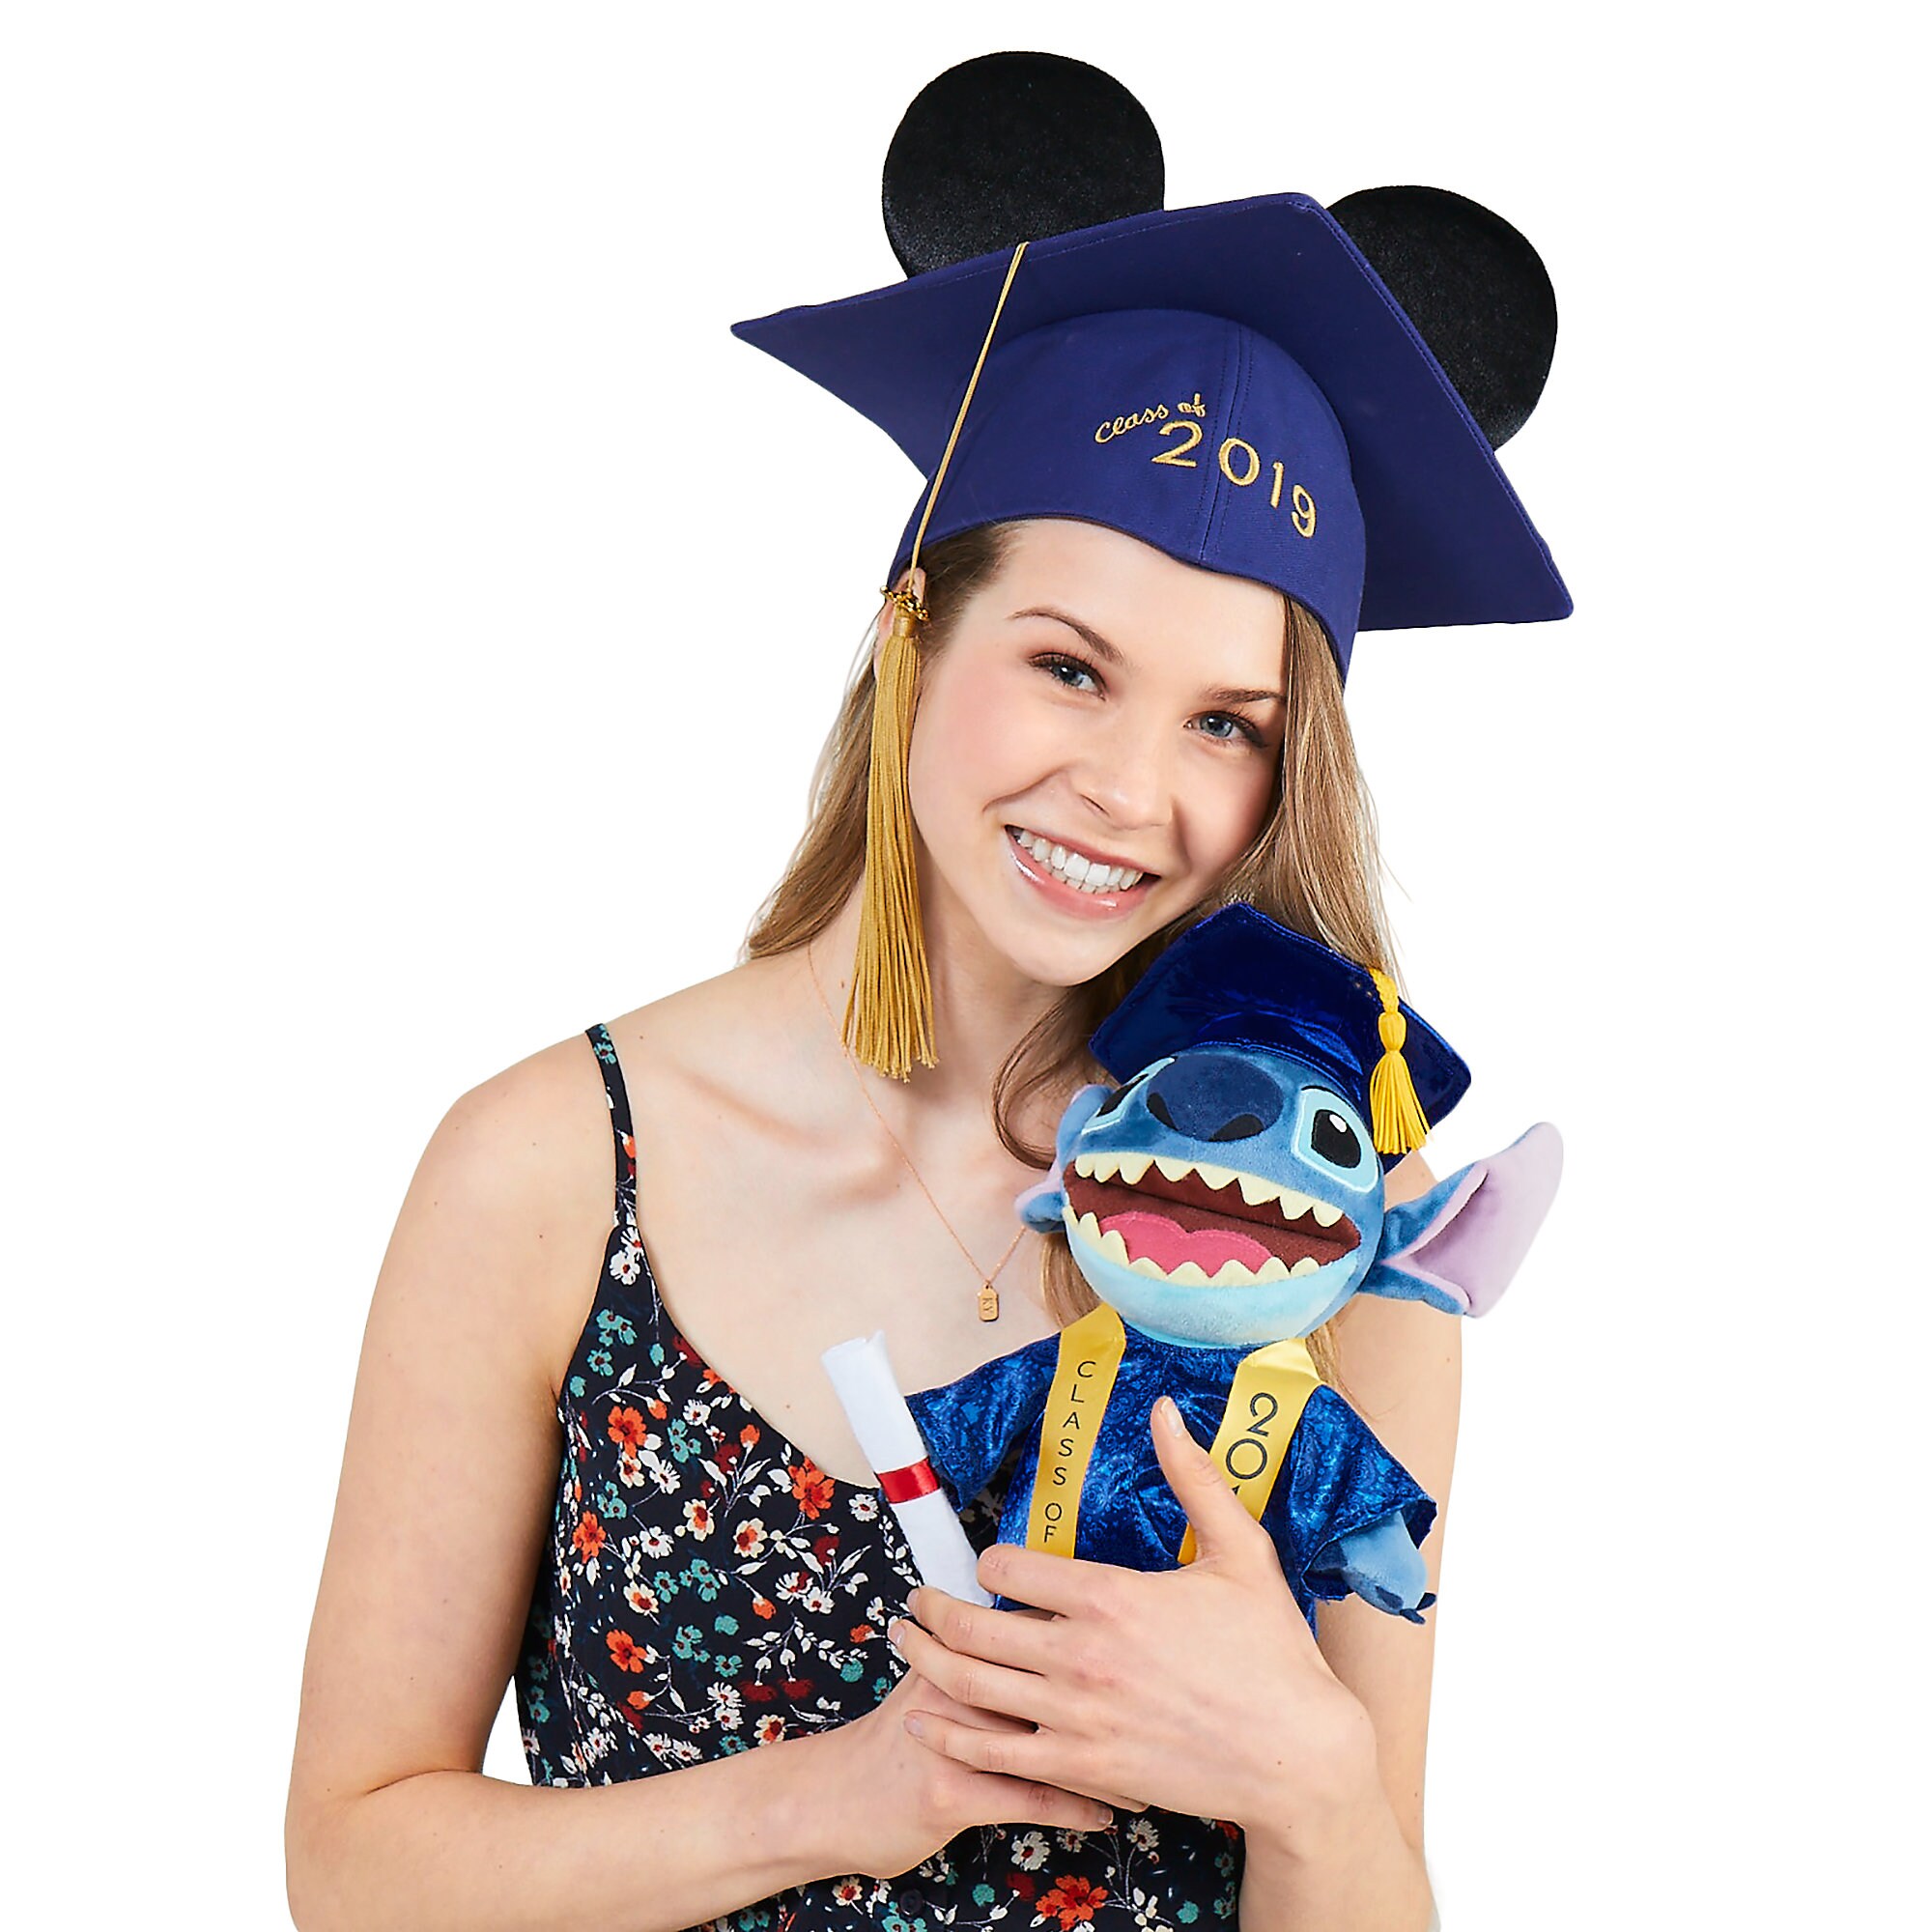 Stitch Graduation Plush 2019 - Small - 9''